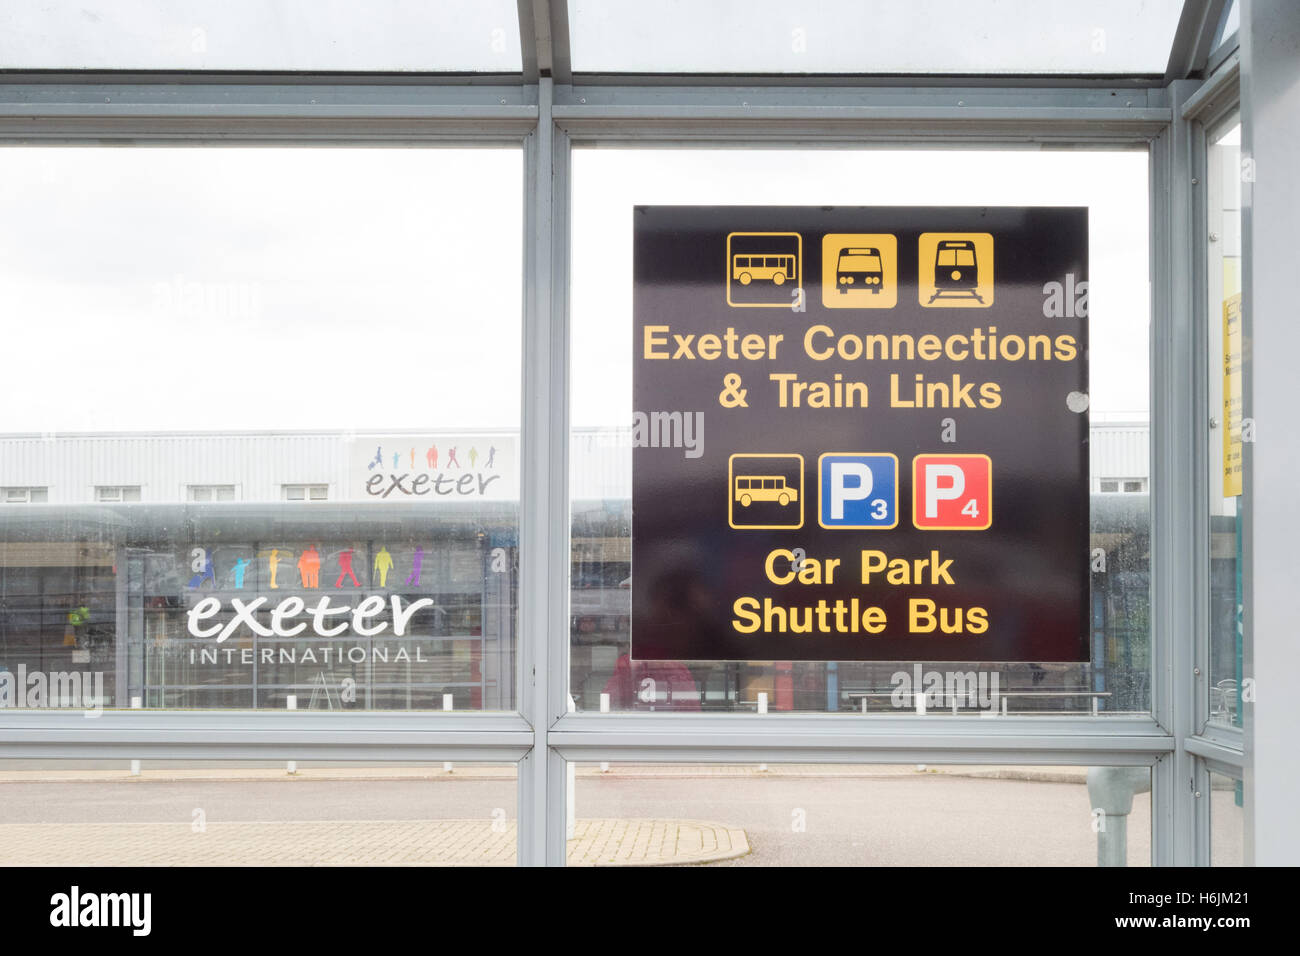 Exeter Aeroporto Internazionale - Segno dentro fermata bus fuori dall aeroporto di dare informazioni su come viaggiare in Exeter City Foto Stock